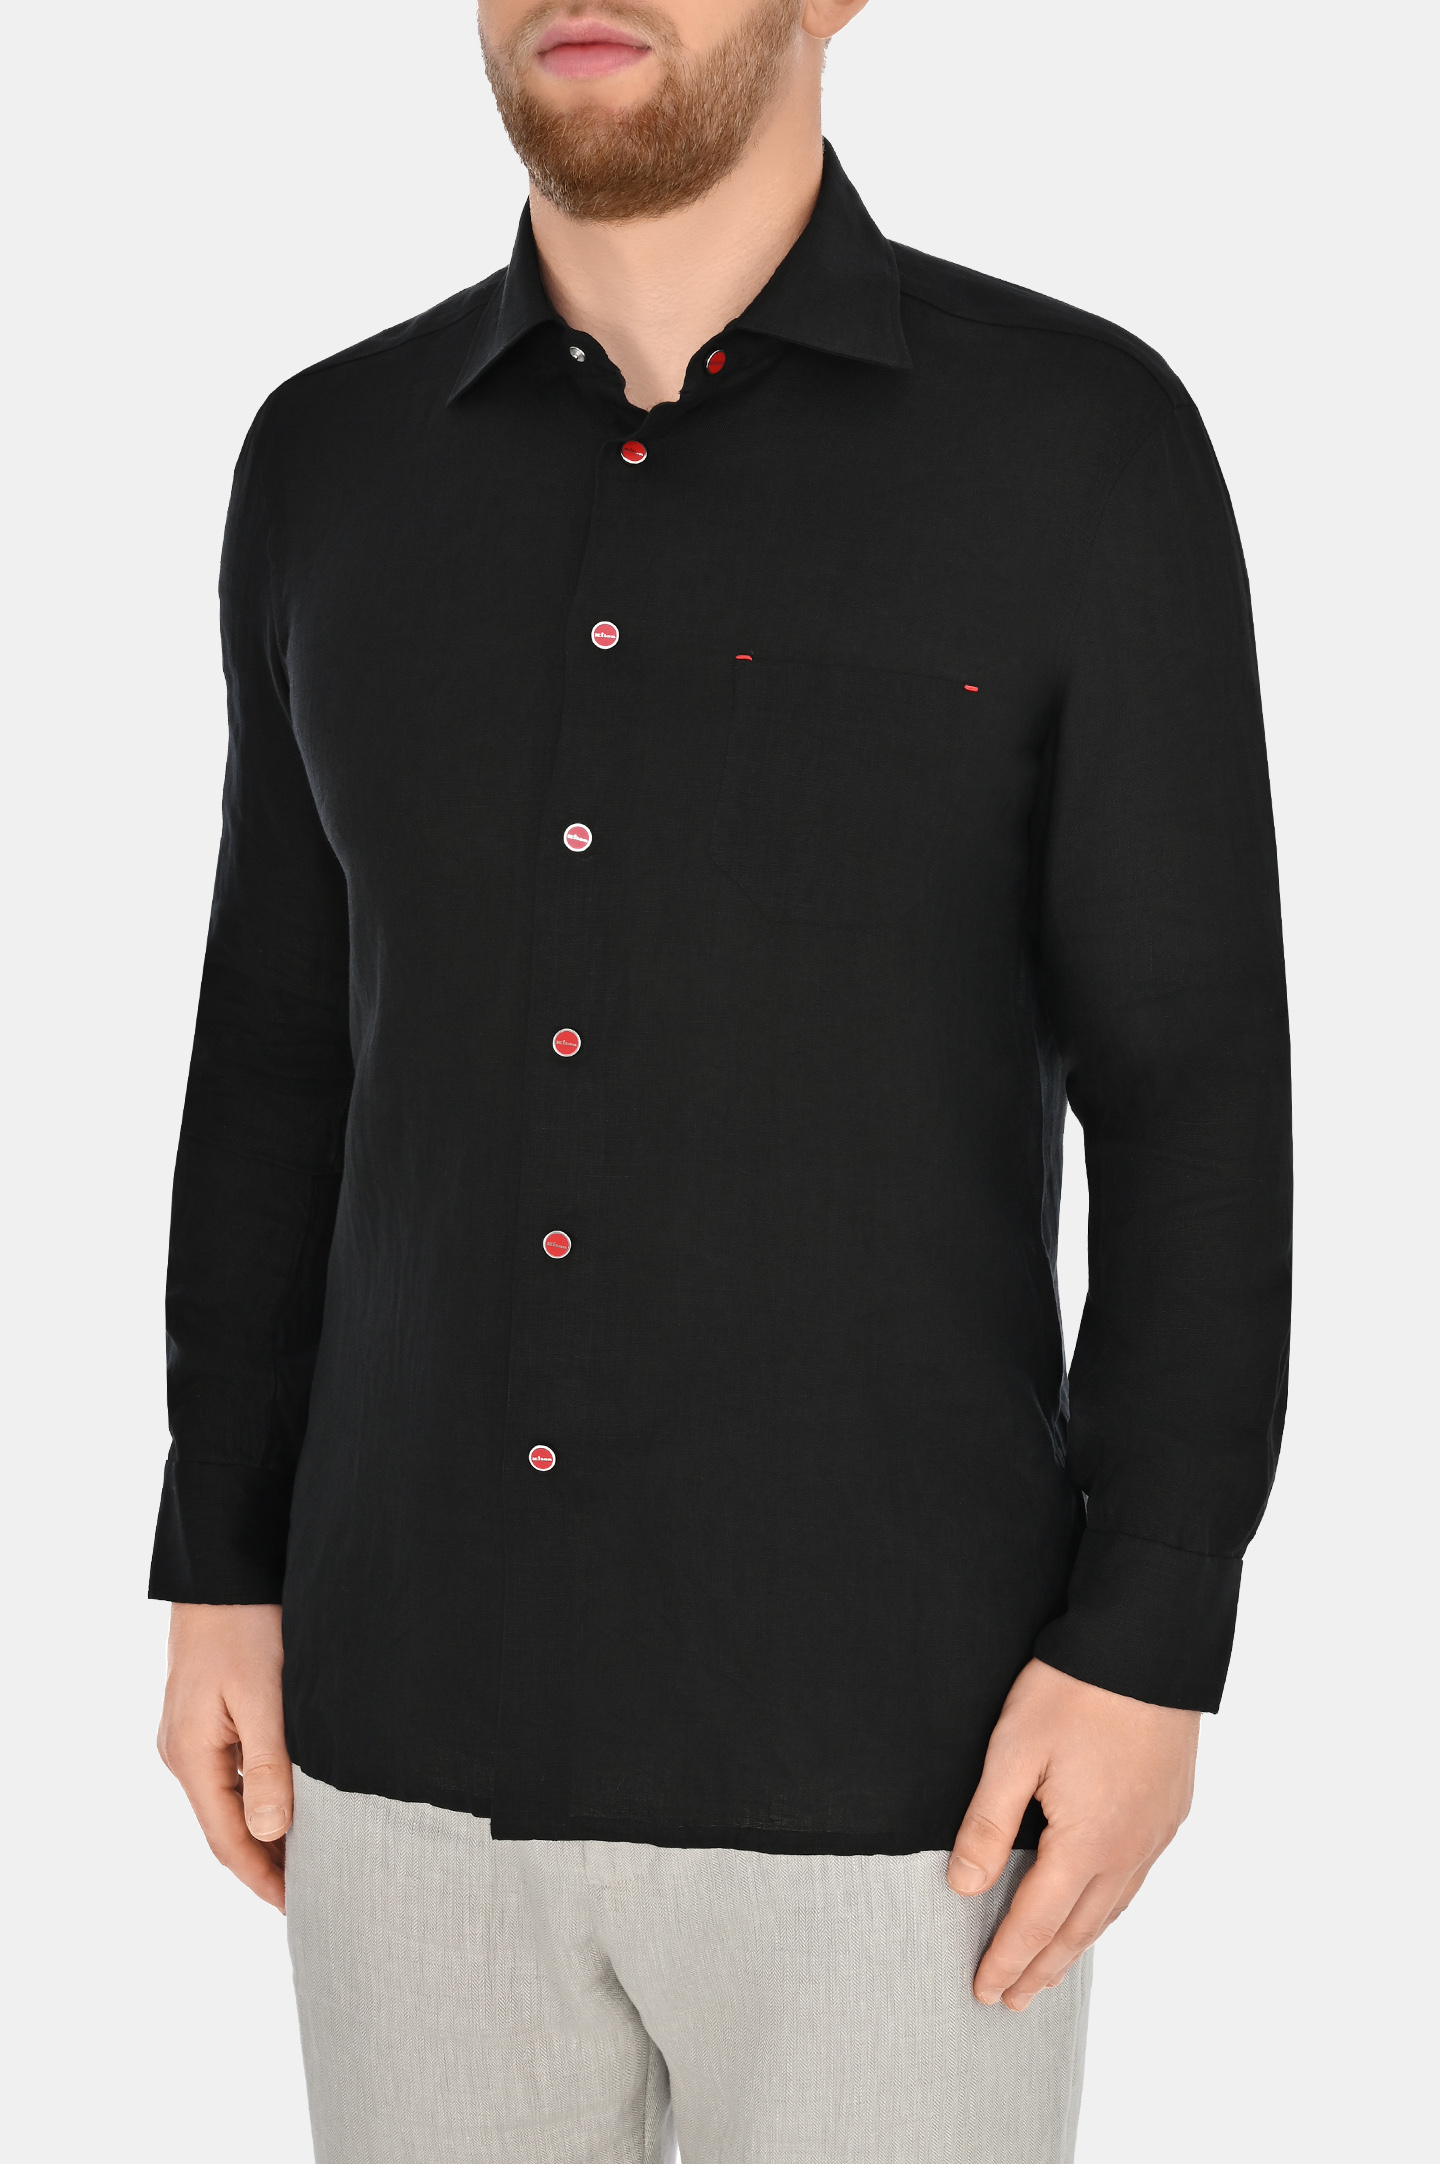 Рубашка из льна на кнопках KITON UMCNERPH088381, цвет: Черный, Мужской